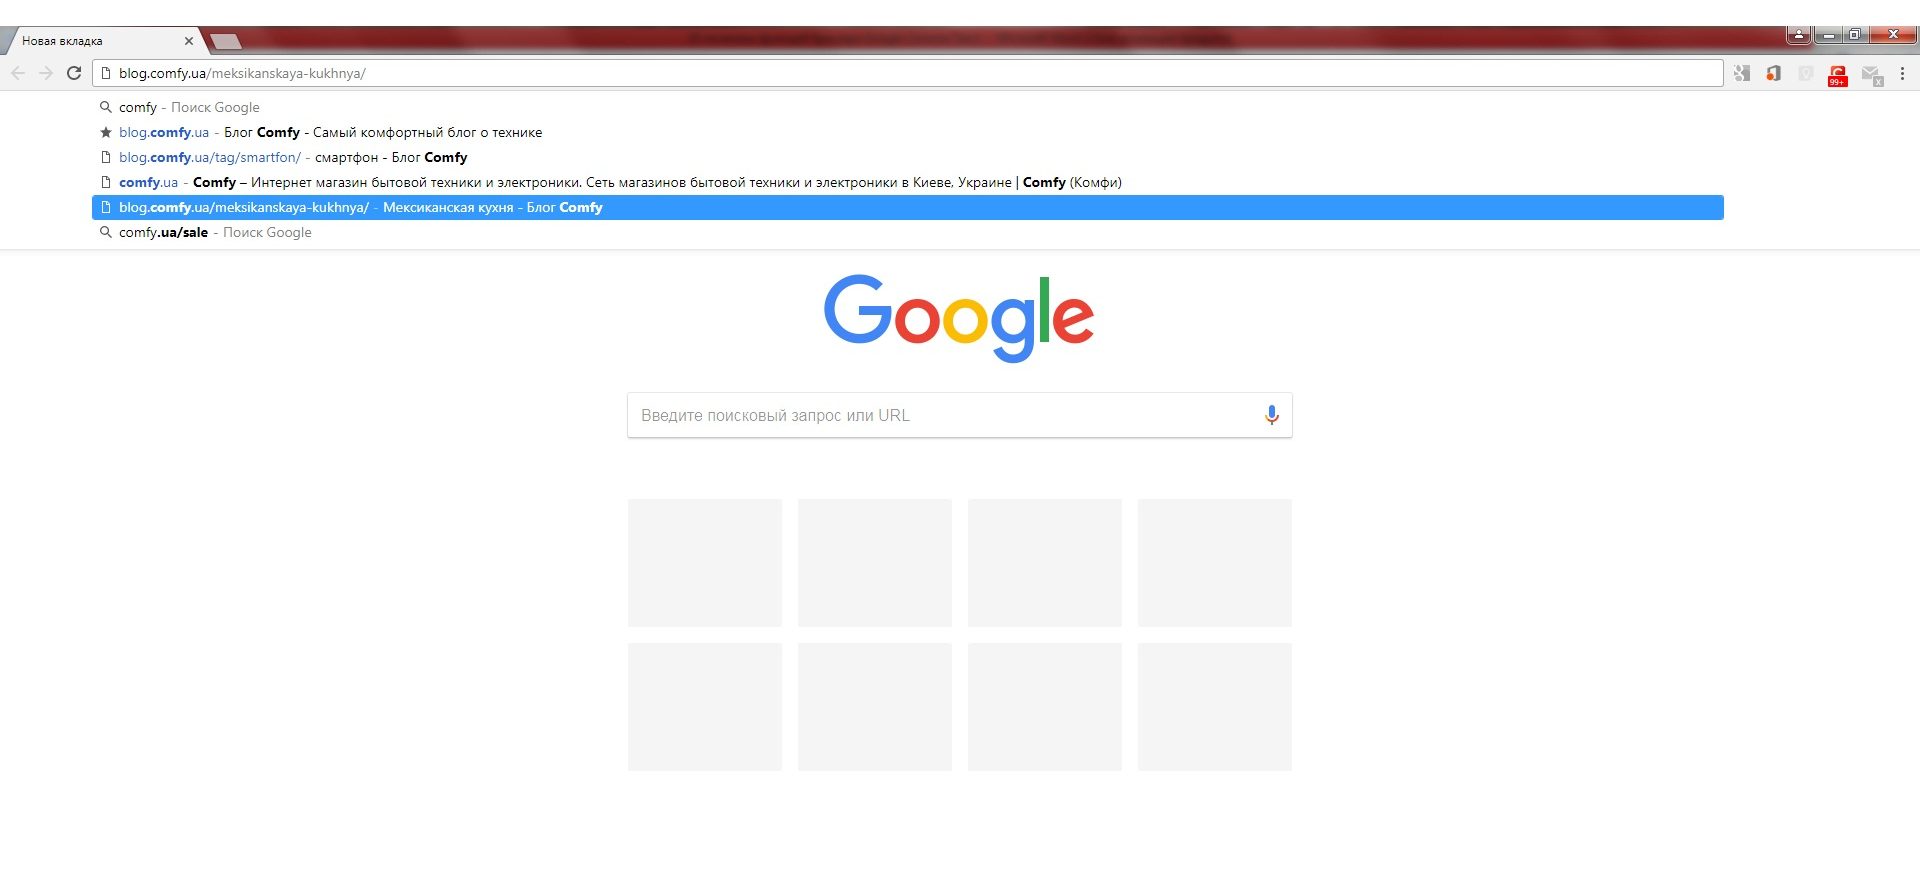 10 полезных функций браузера Google Chrome - удалить сайт